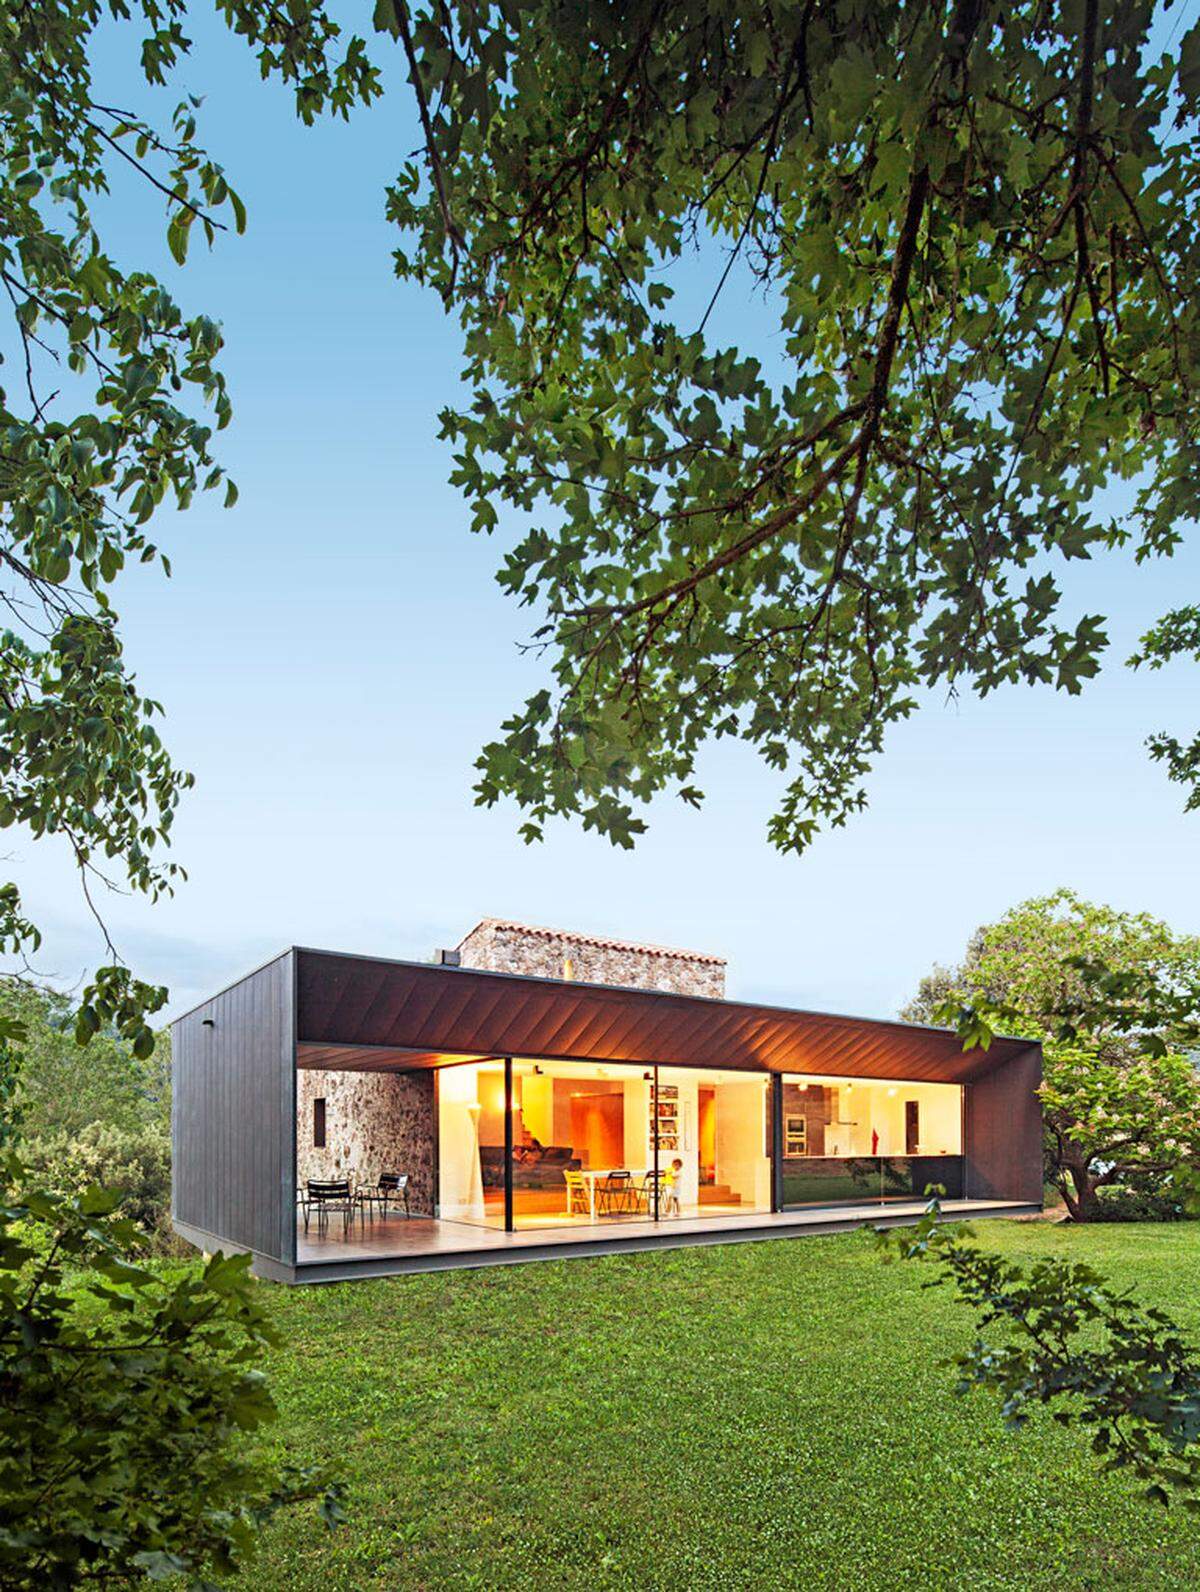 Der Award des Architektur- und Designmagazin HÄUSER zeichnet die gelungensten Umbauten von Einfamilienhäuser aus. Drei Projekte wurden 2015 zu gleichwertigen Siegern gekürt. Etwa der Umbau und die Erweiterung eines Bauernhauses in Santa Pau/Girona (Spanien)